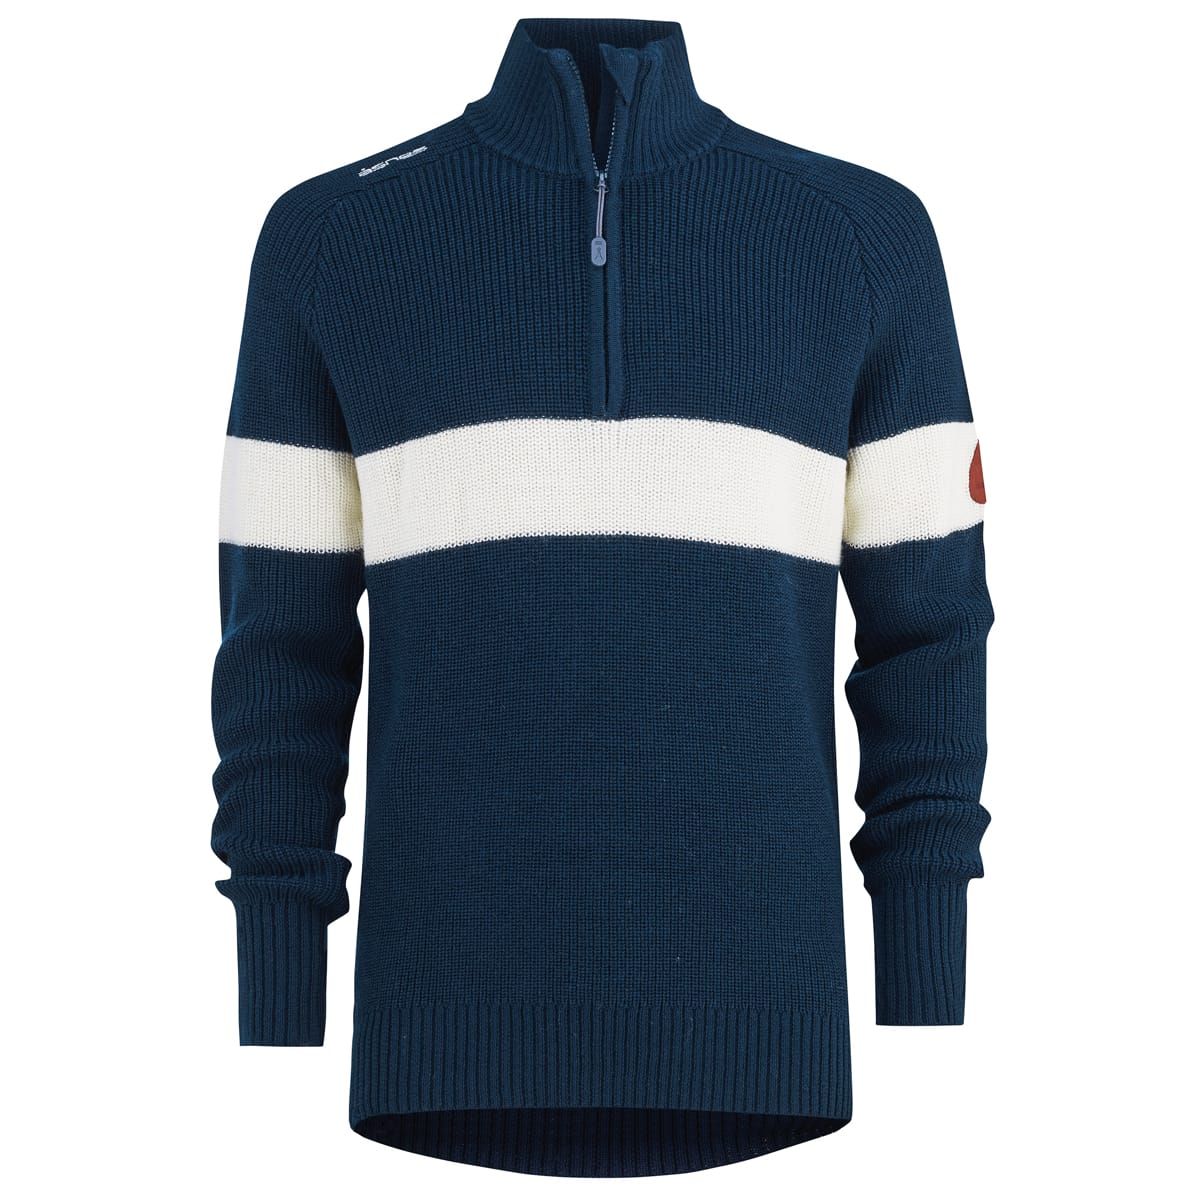 Åsnes Knaus Sweater Navy Blue